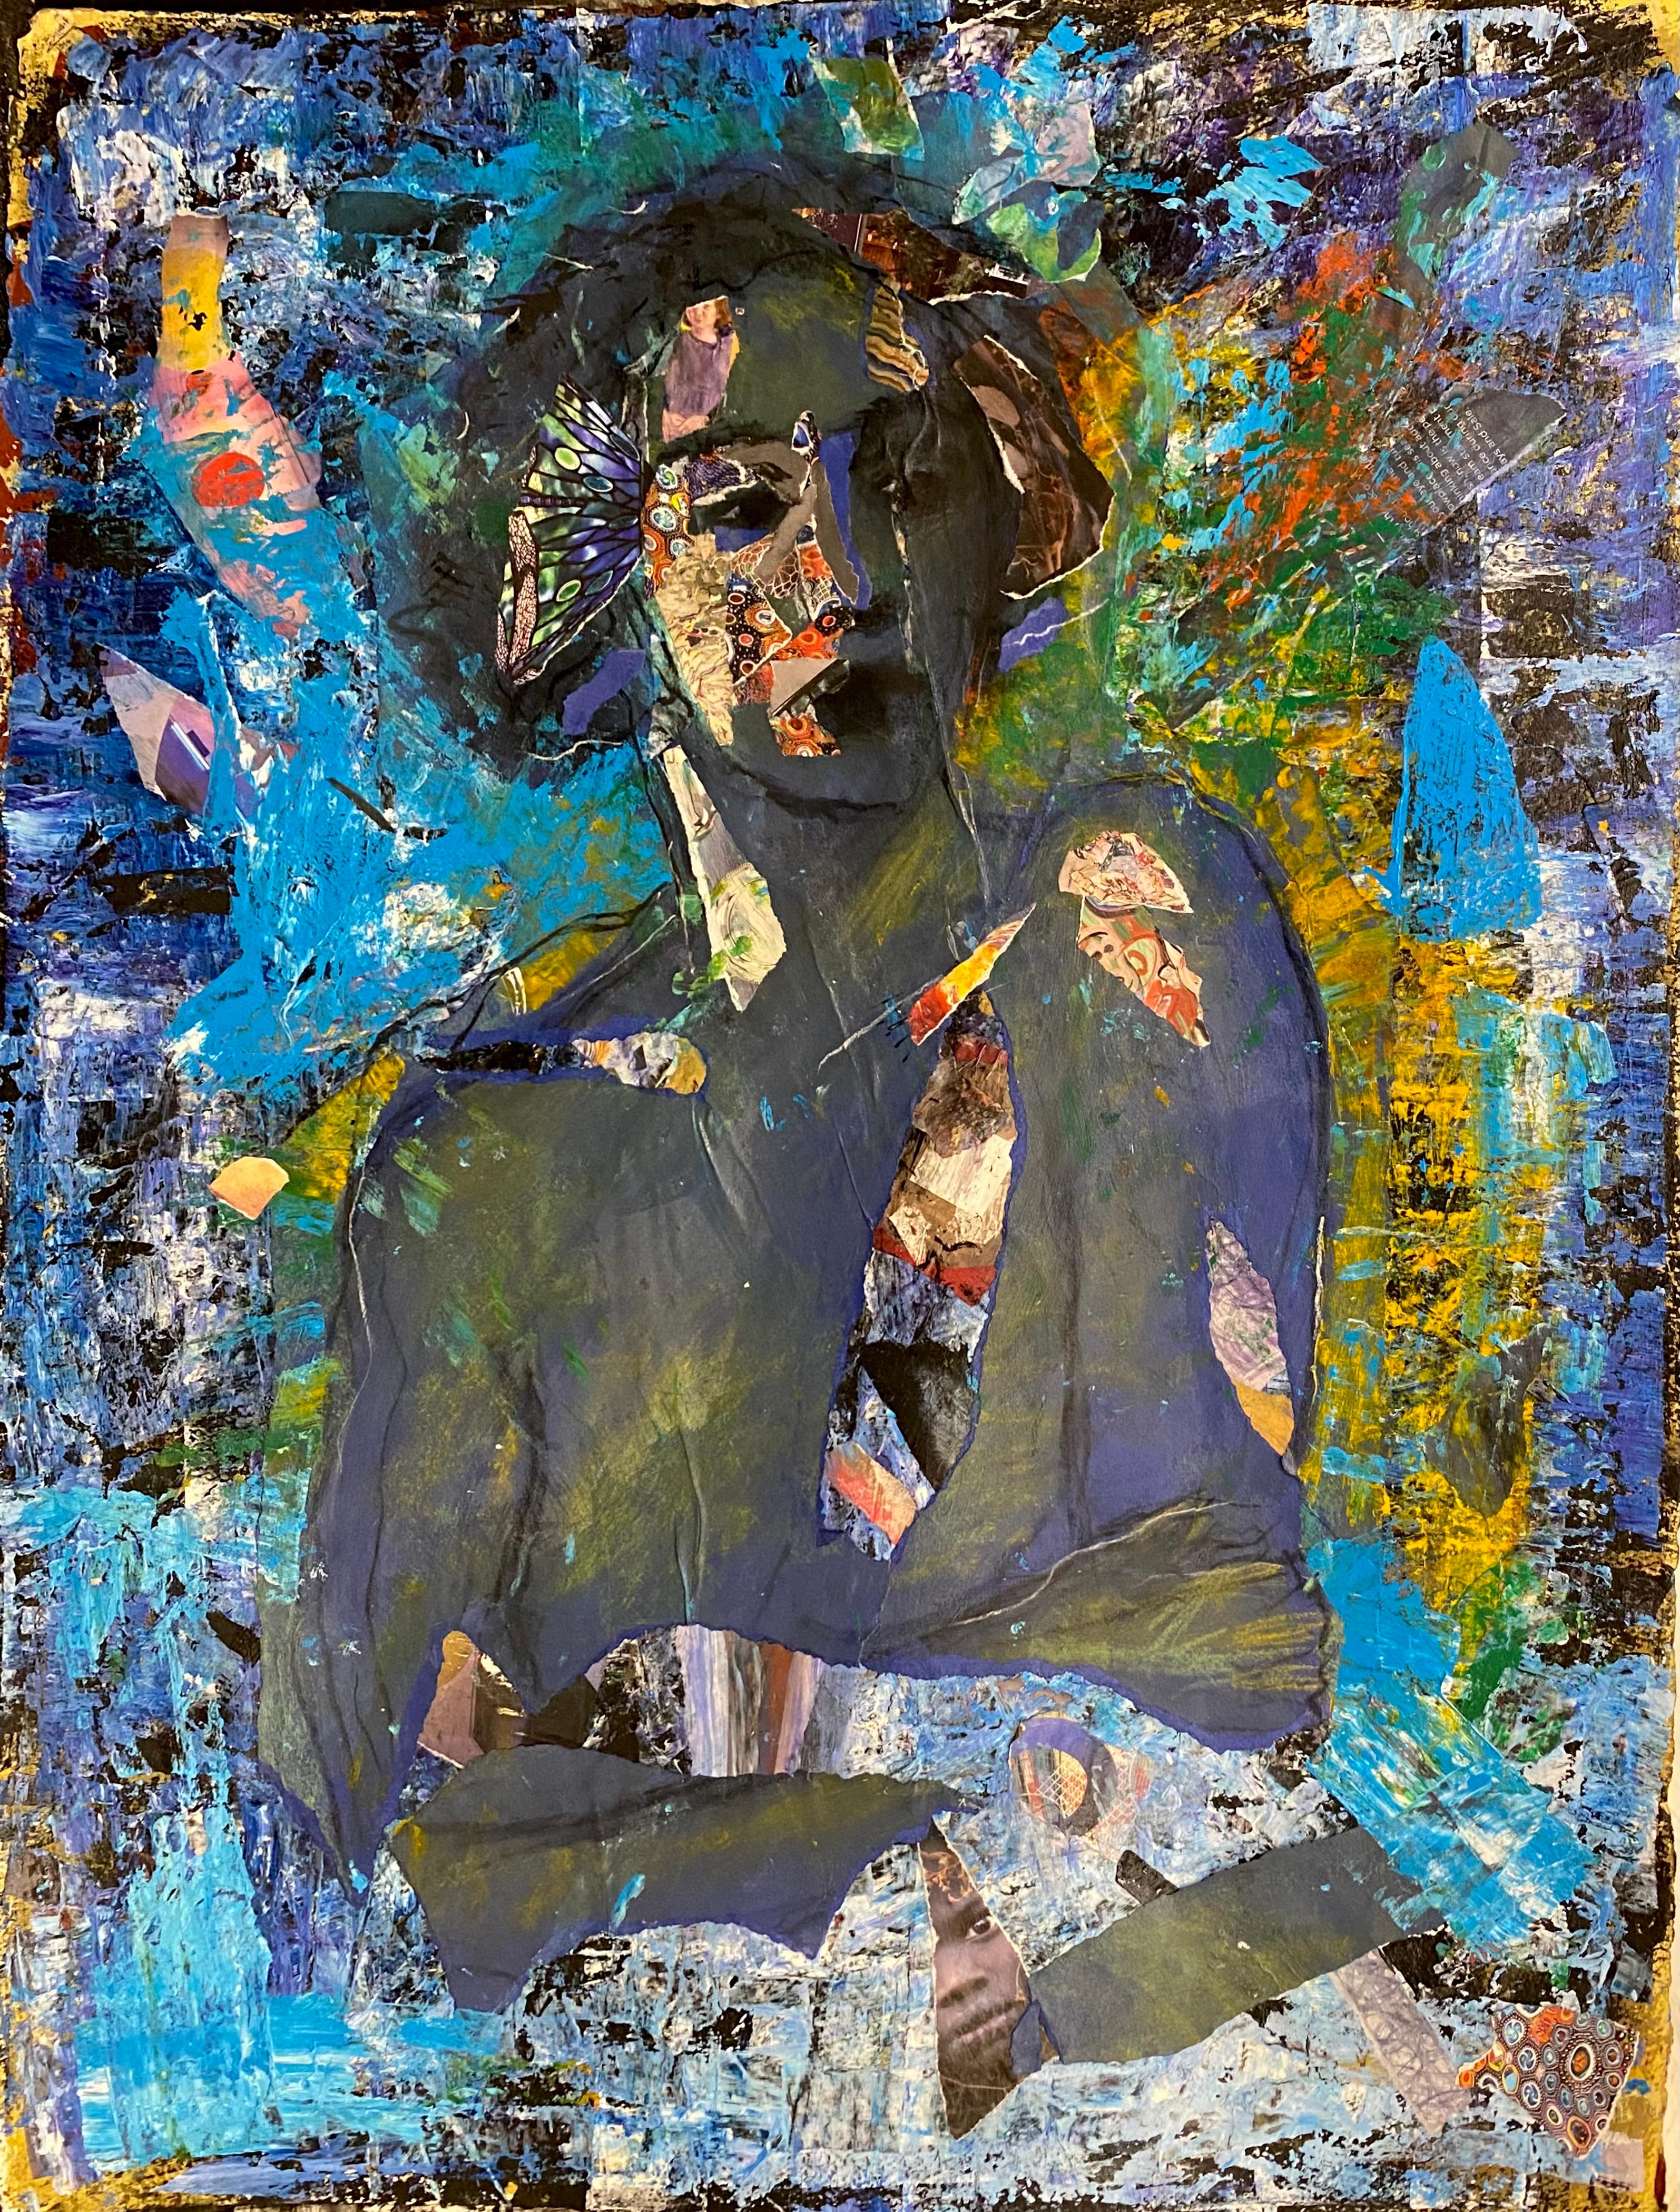 Indigo bleu, figure féminine en collage de dessin avec motifs abstraits, bleus vifs